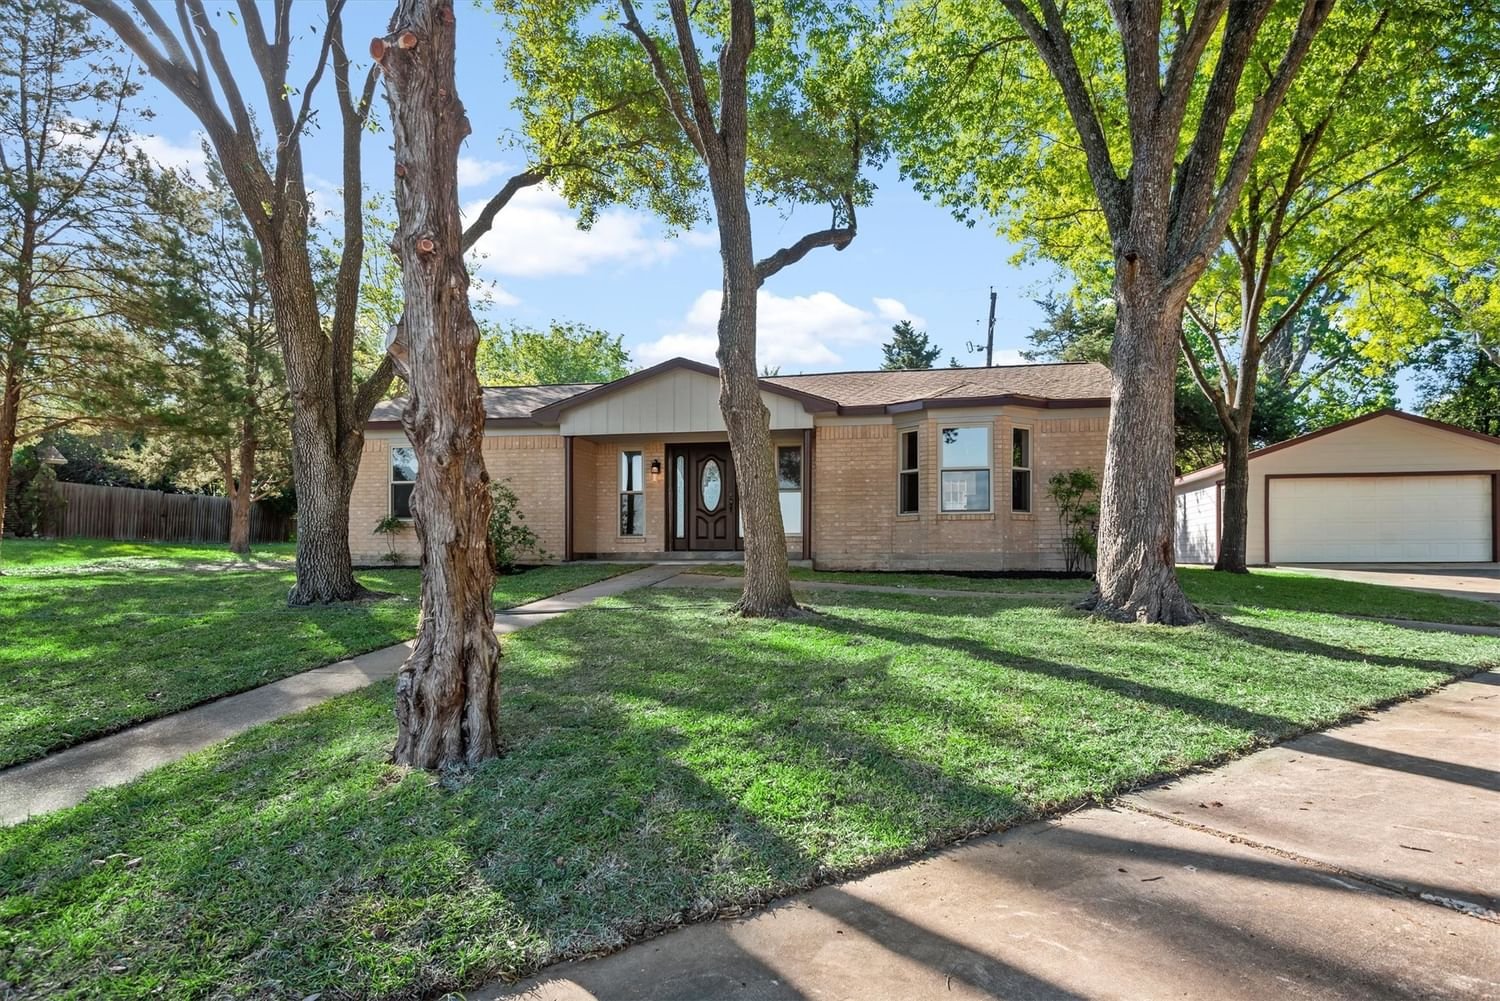 Real estate property located at 1806 Kevin, Grimes, Cedar Brook Sec 1, Navasota, TX, US